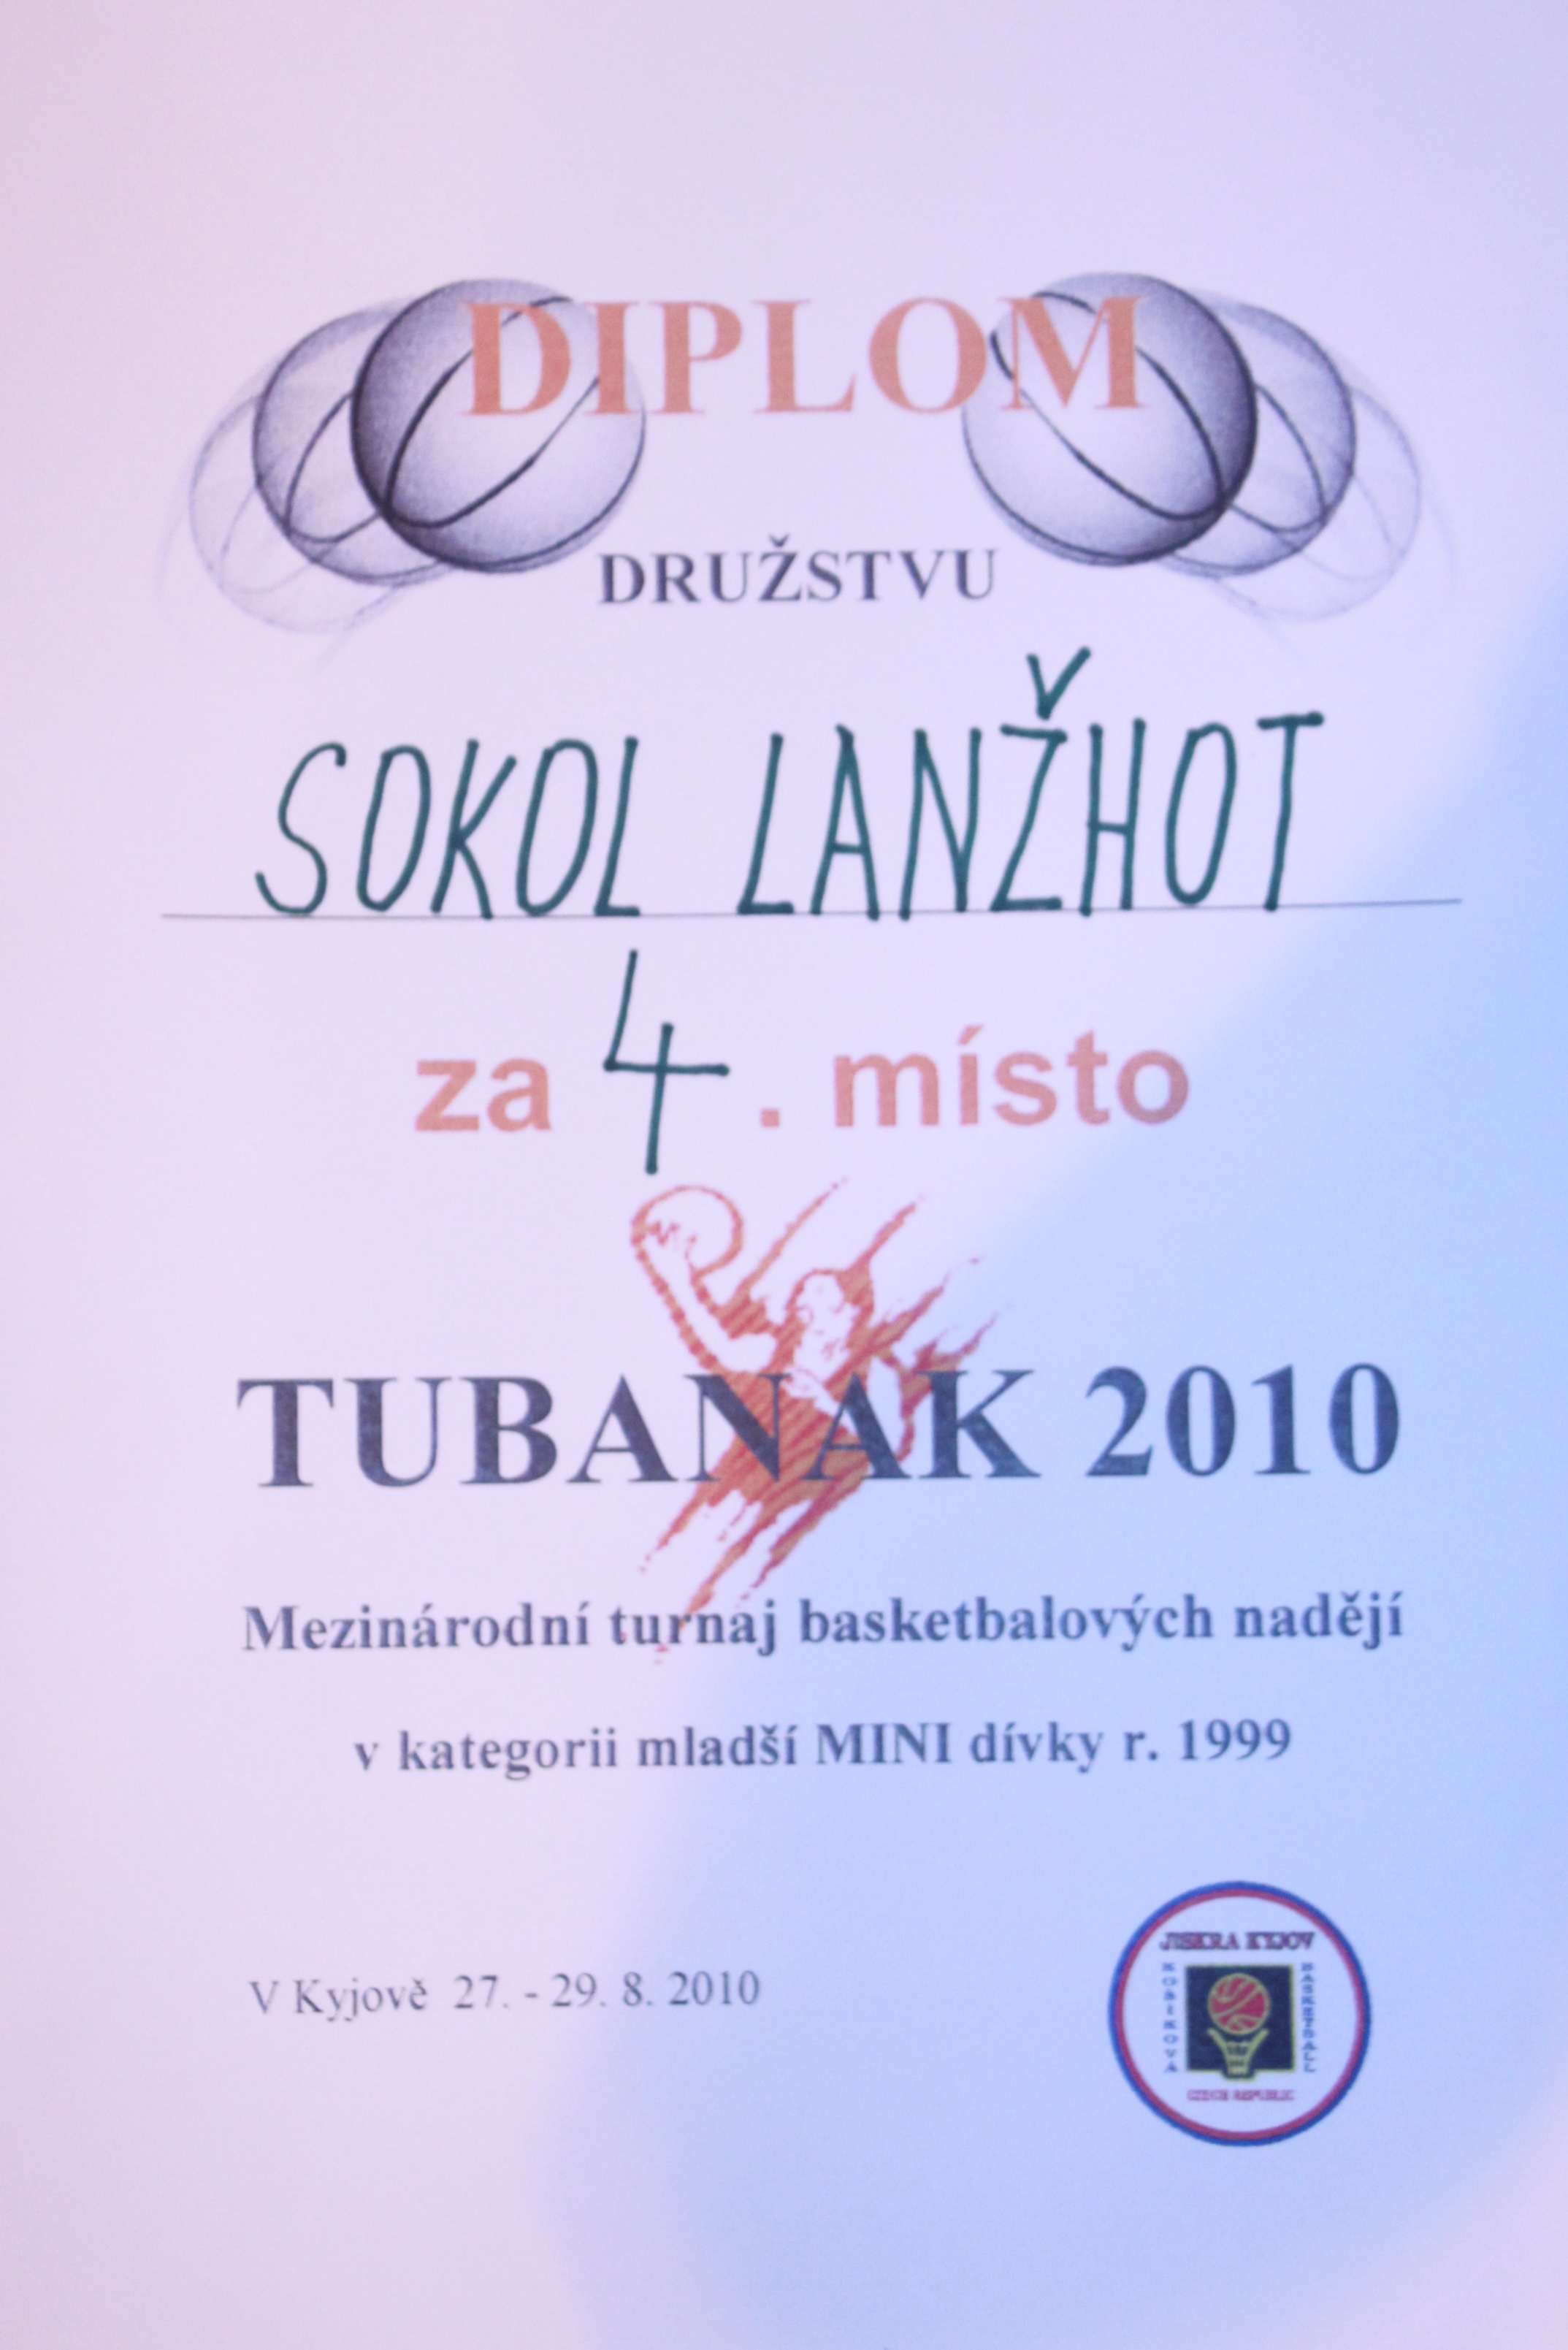 tubanak-2010-241